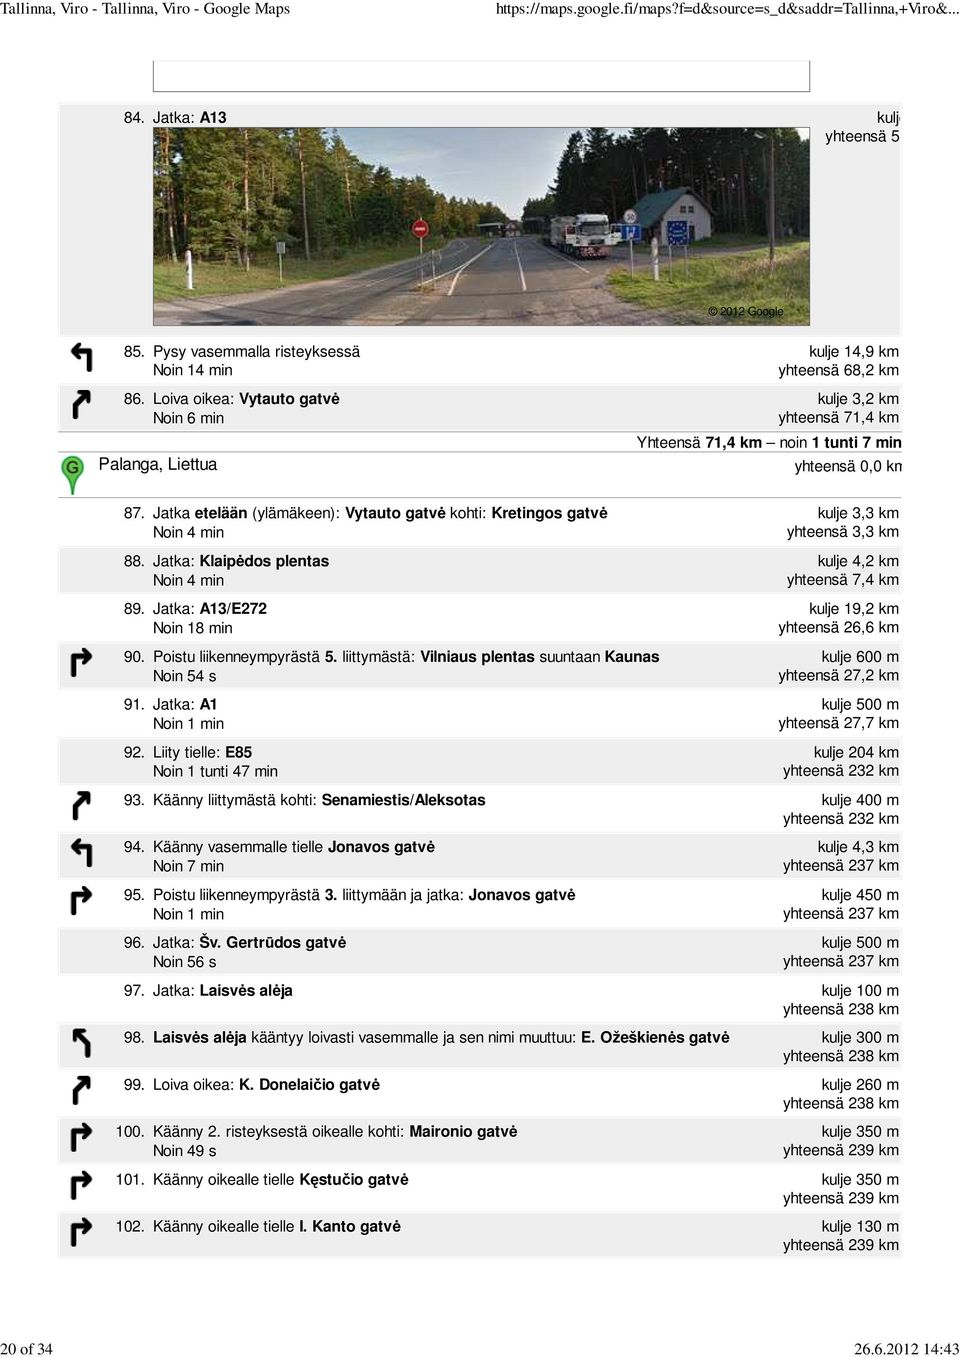 Jatka etelään (ylämäkeen): Vytauto gatvė kohti: Kretingos gatvė Noin 4 min 88. Jatka: Klaipėdos plentas Noin 4 min 89.